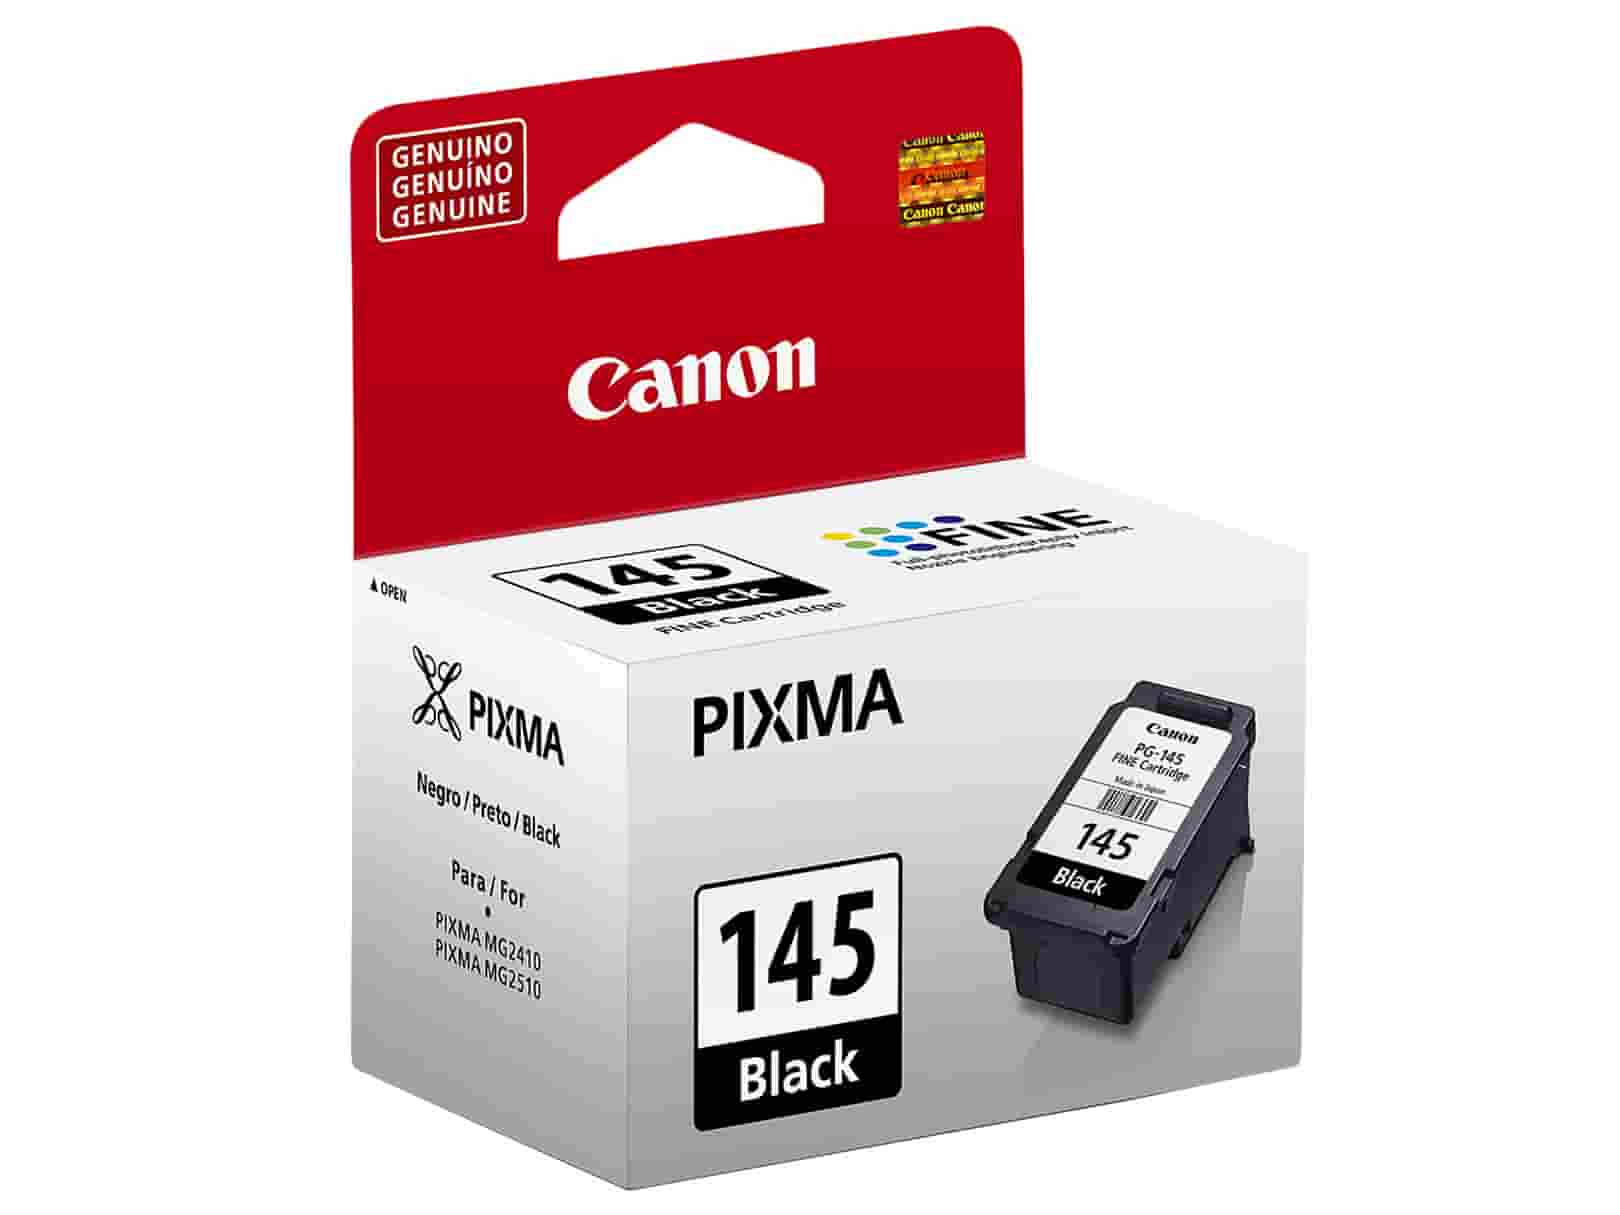 Canon PG-145 Black | Tinta Original